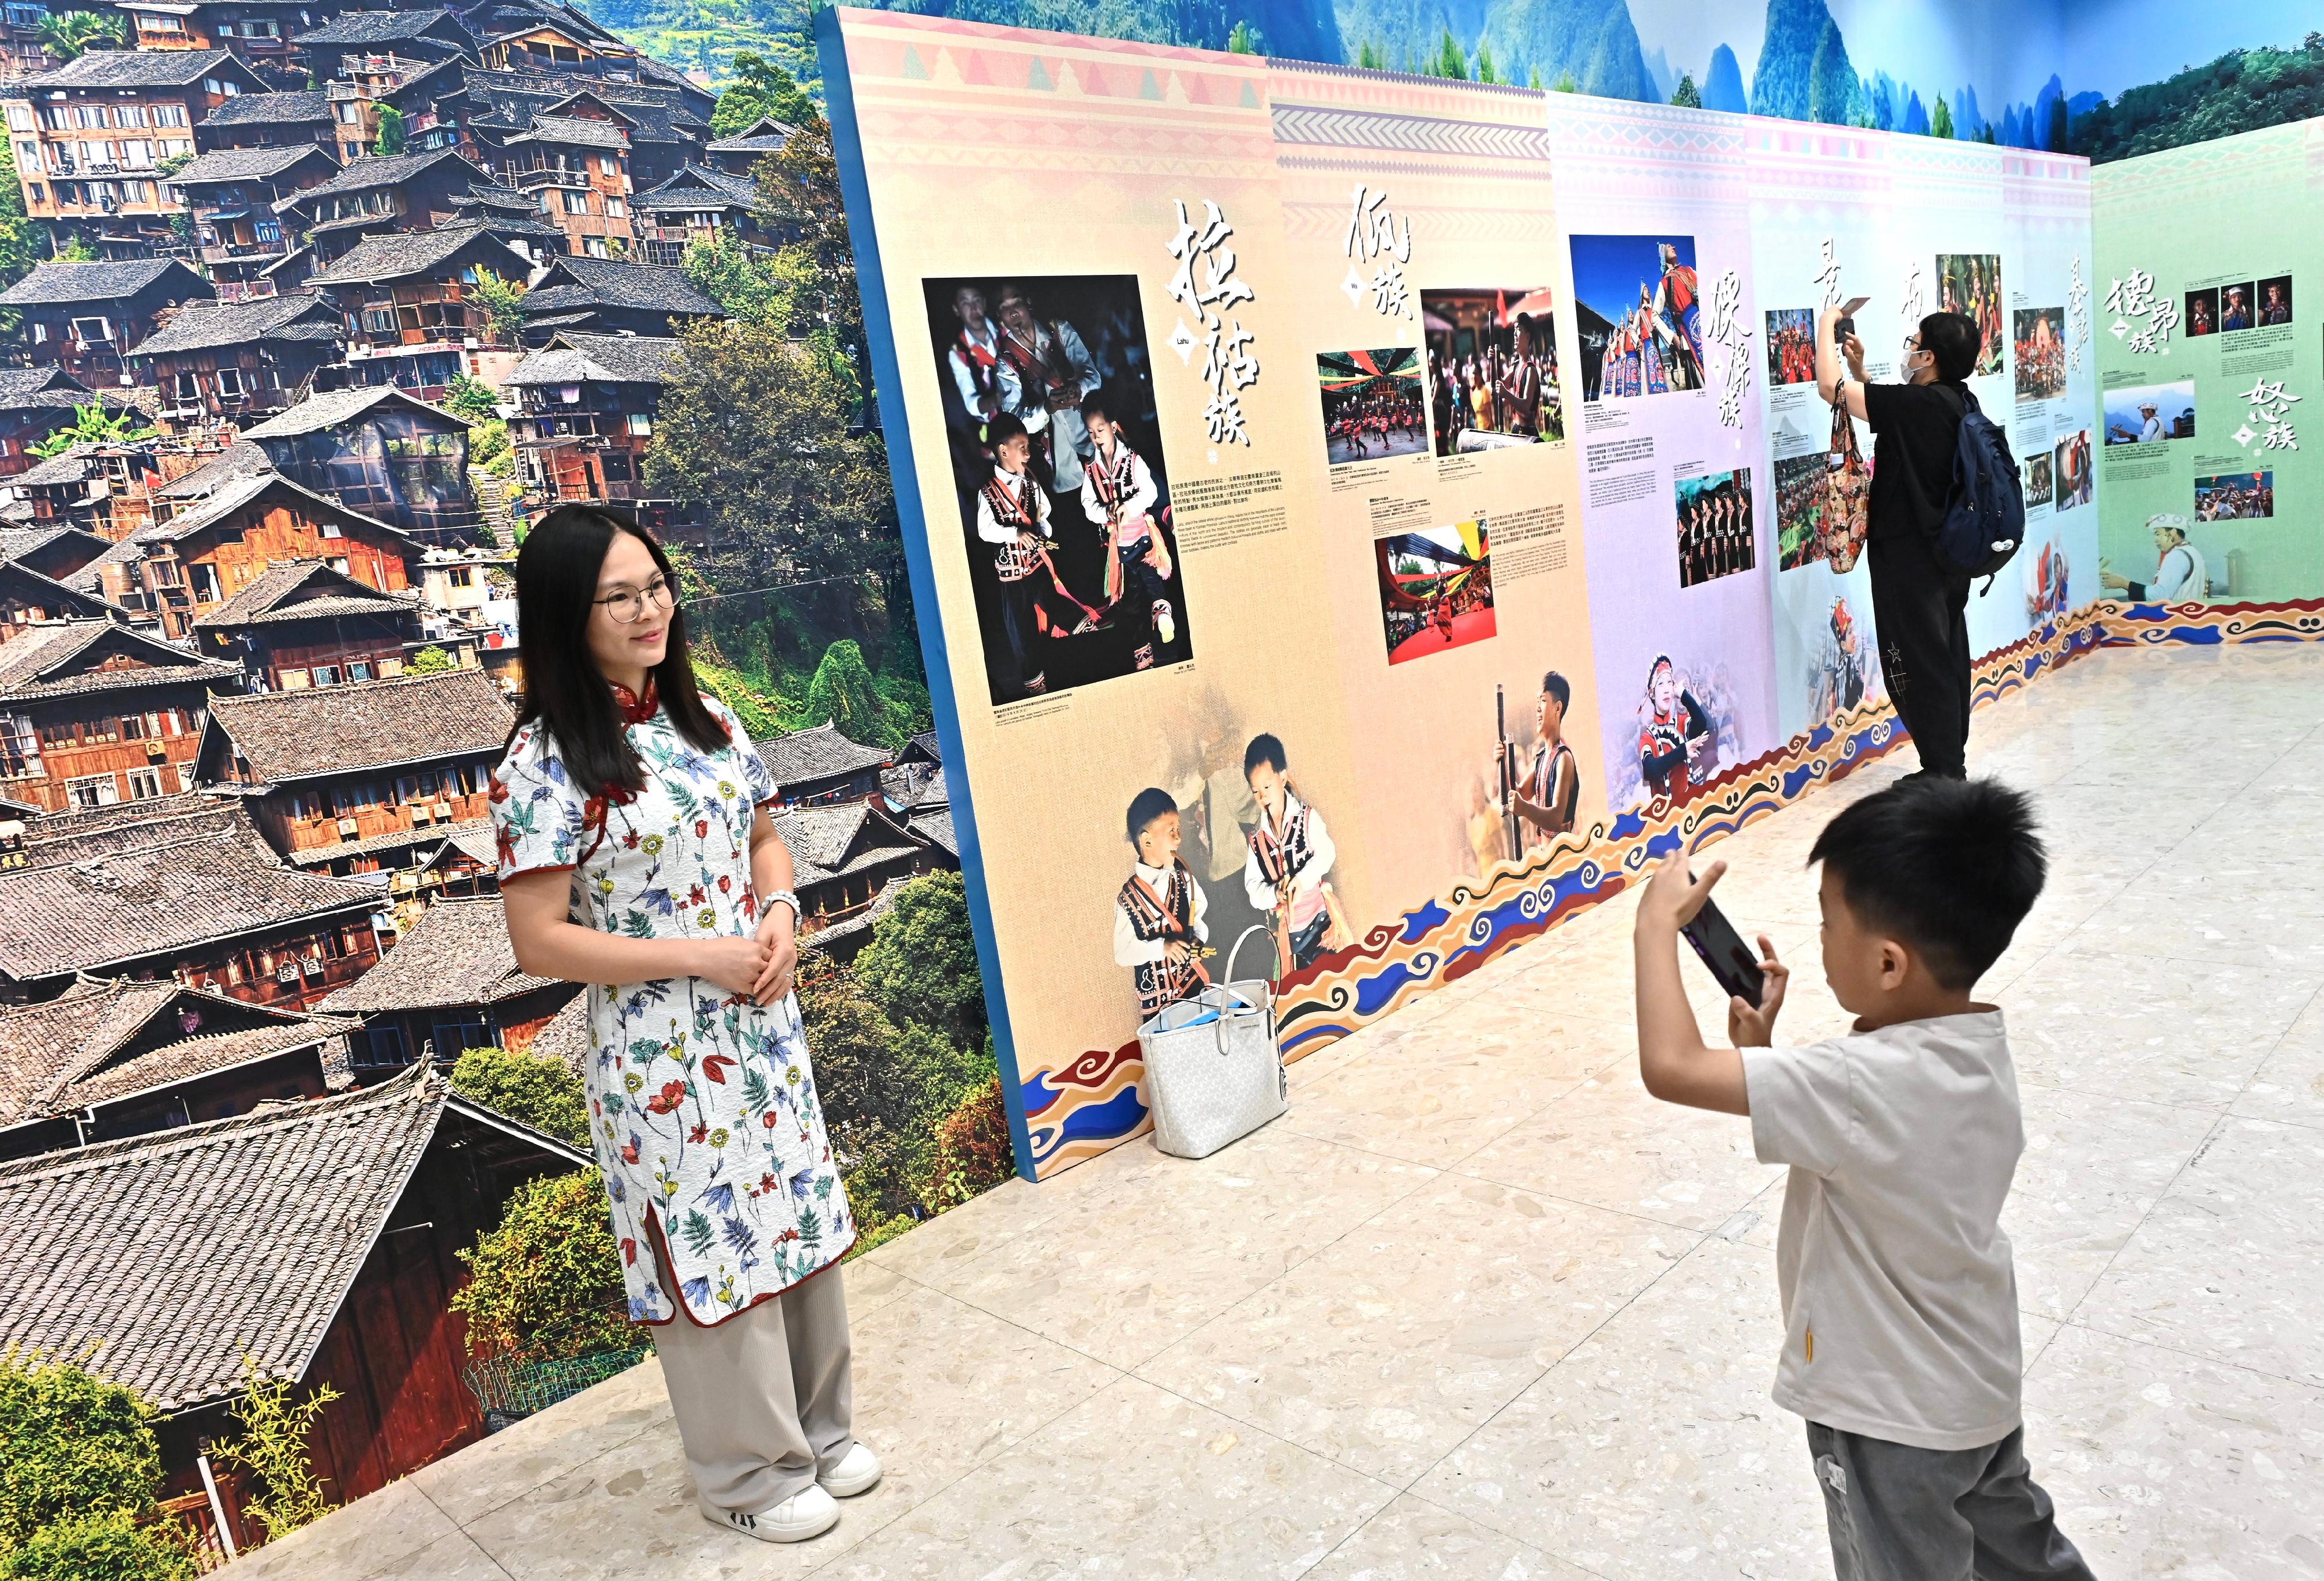 首届「中华文化节」今日（六月九日）下午在沙田举办《多彩华艺》嘉年华。图示市民参观《绽艳──中华织锦耀东方》相片展。